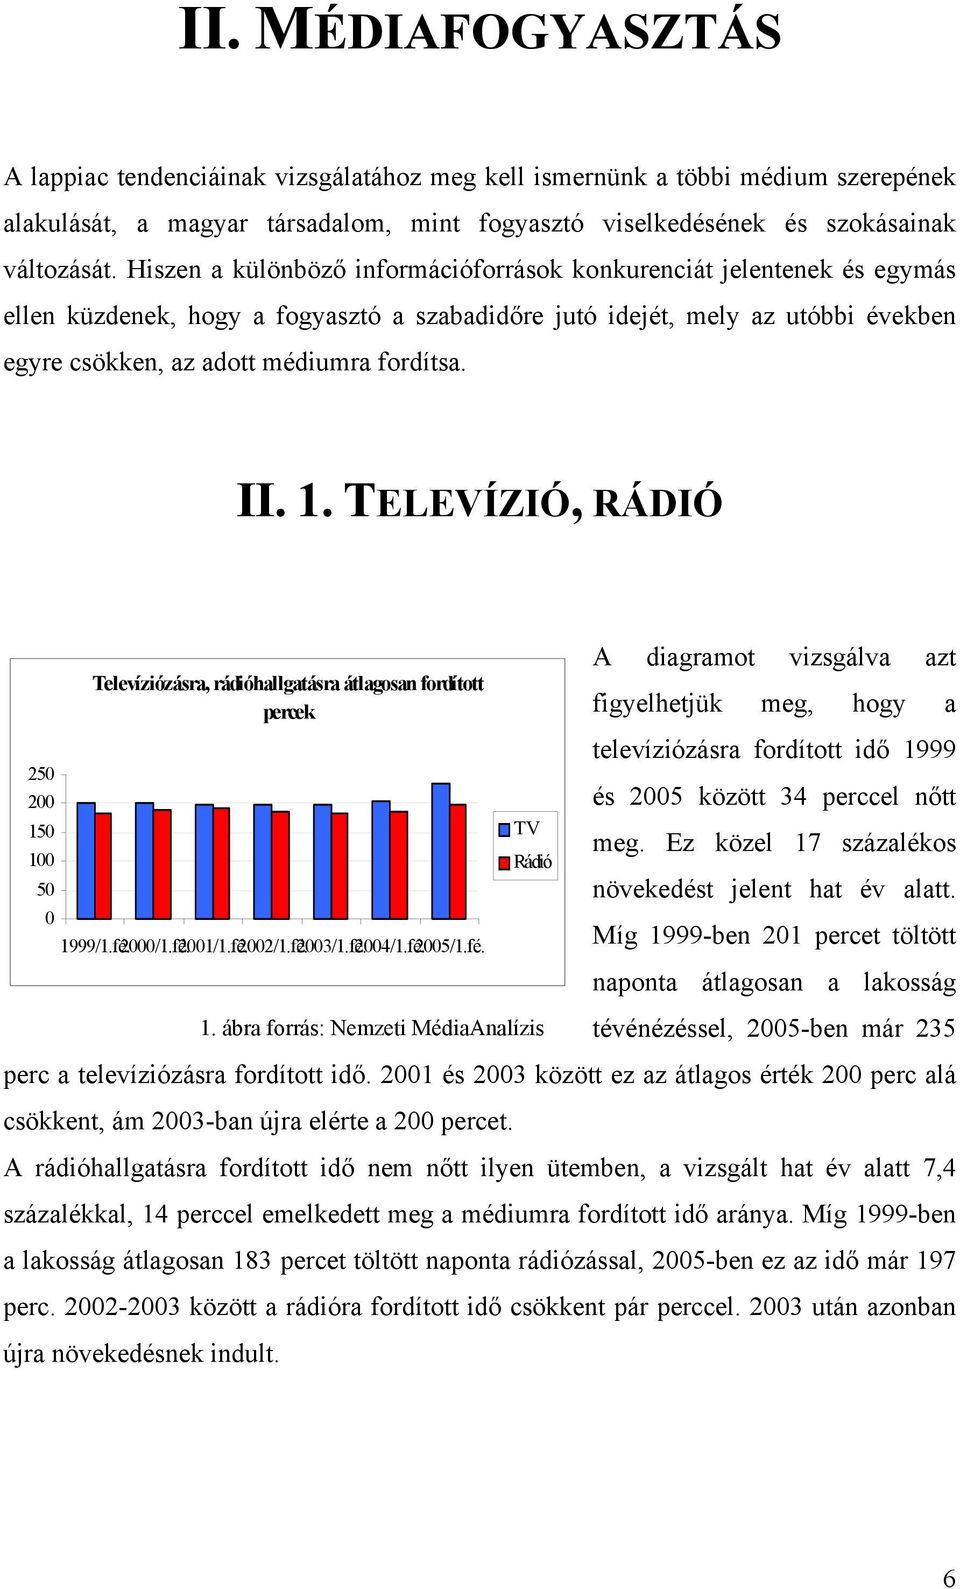 II. 1. TELEVÍZIÓ, RÁDIÓ 250 200 150 100 50 0 Televíziózásra, rádióhallgatásra átlagosan fordított percek 1999/1.fé.